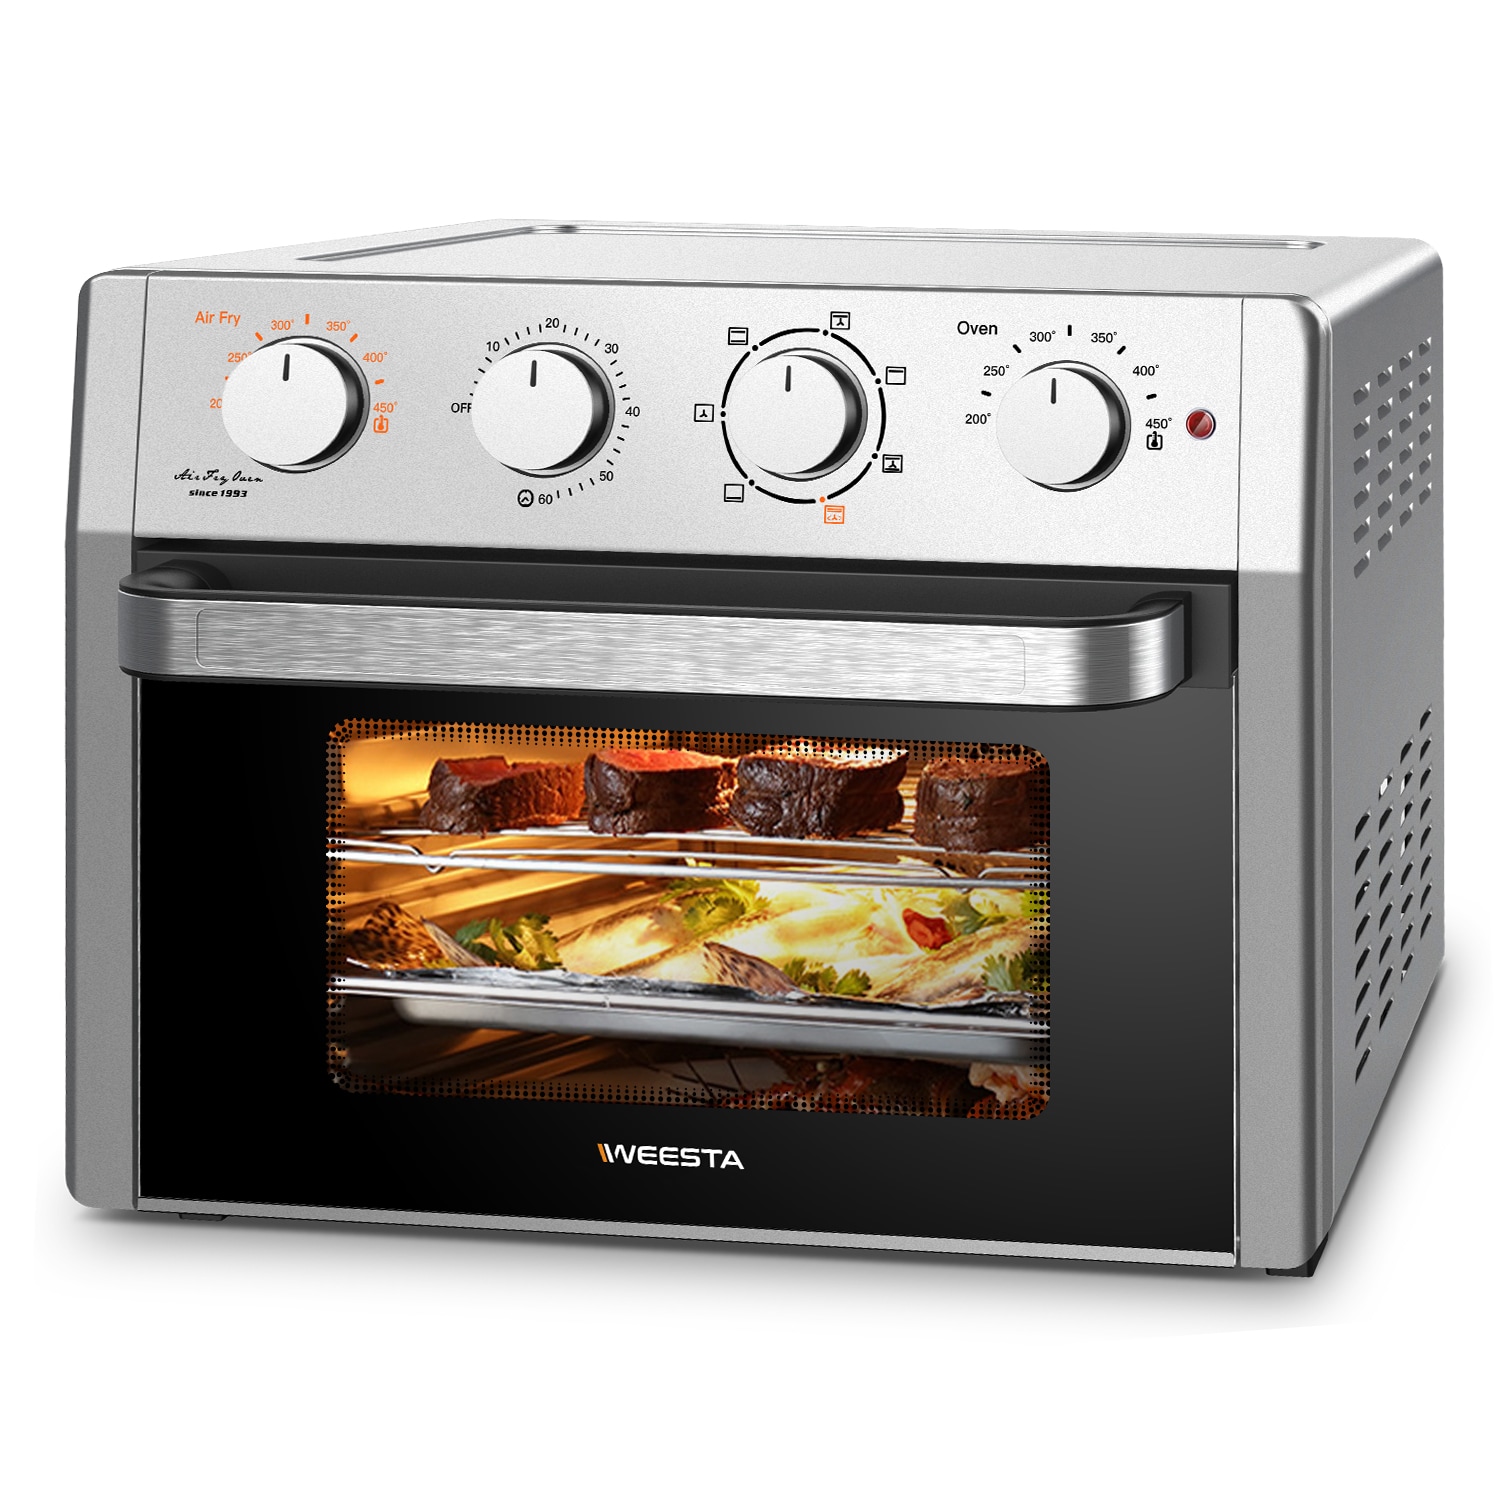 Ninja's Dual Heat 13-in-1 air fryer/toaster oven/dehydrator combo now $197  ( low)